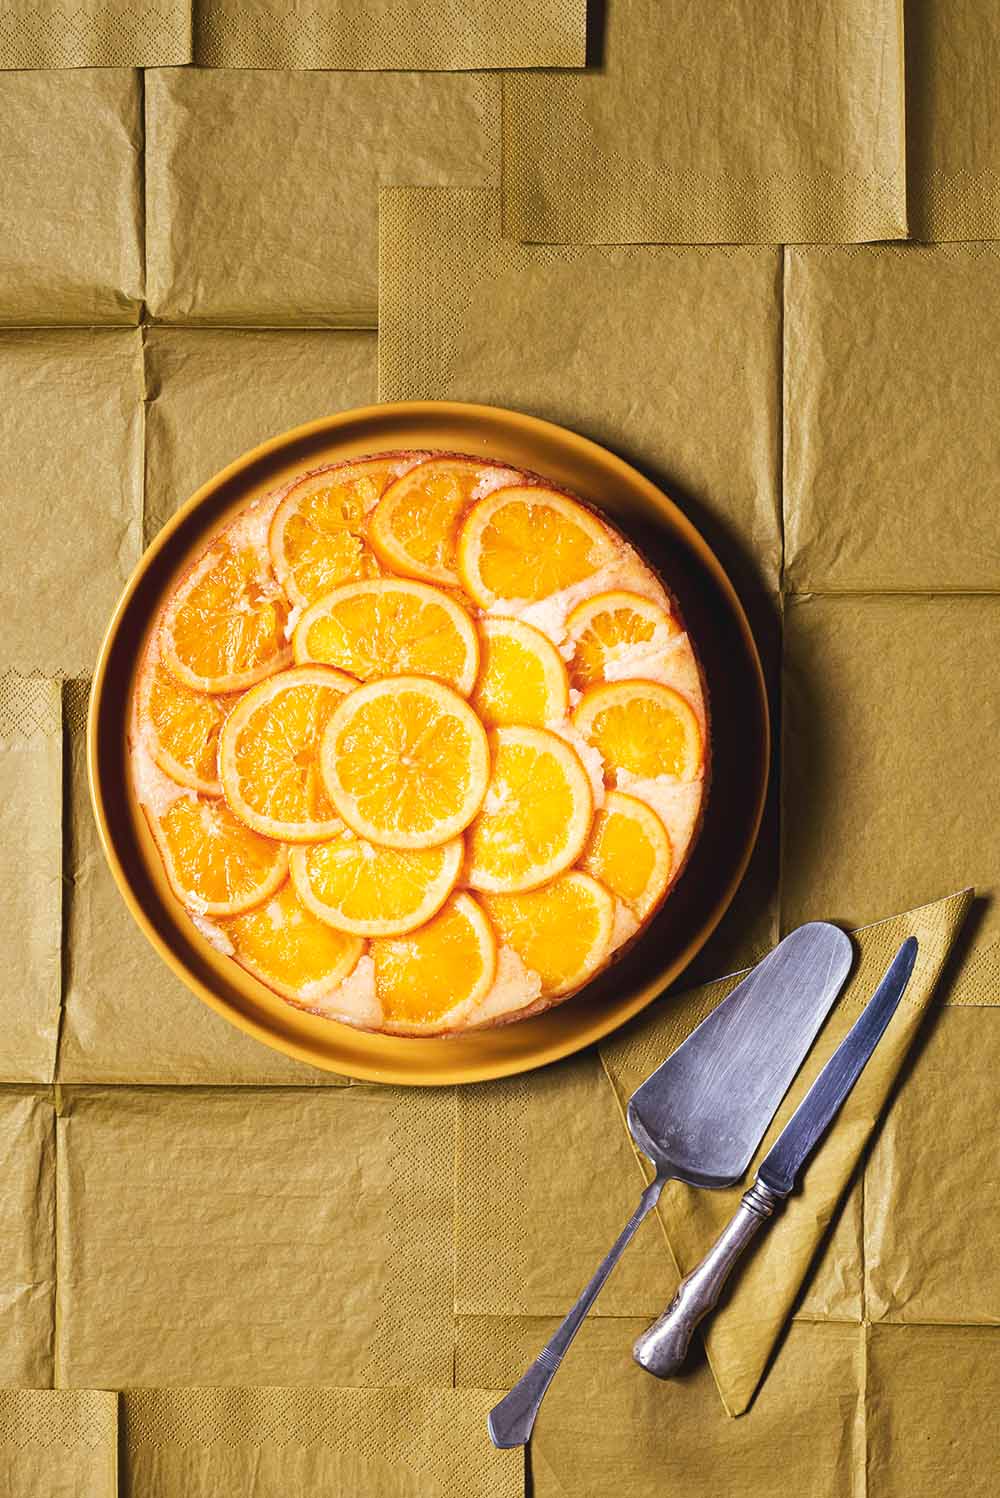 En un mantel de color caqui está puesto un plato de color naranja y encima de este plato está la tarta de naranja invertida. También en el plato hay un cuchillo para cortar.